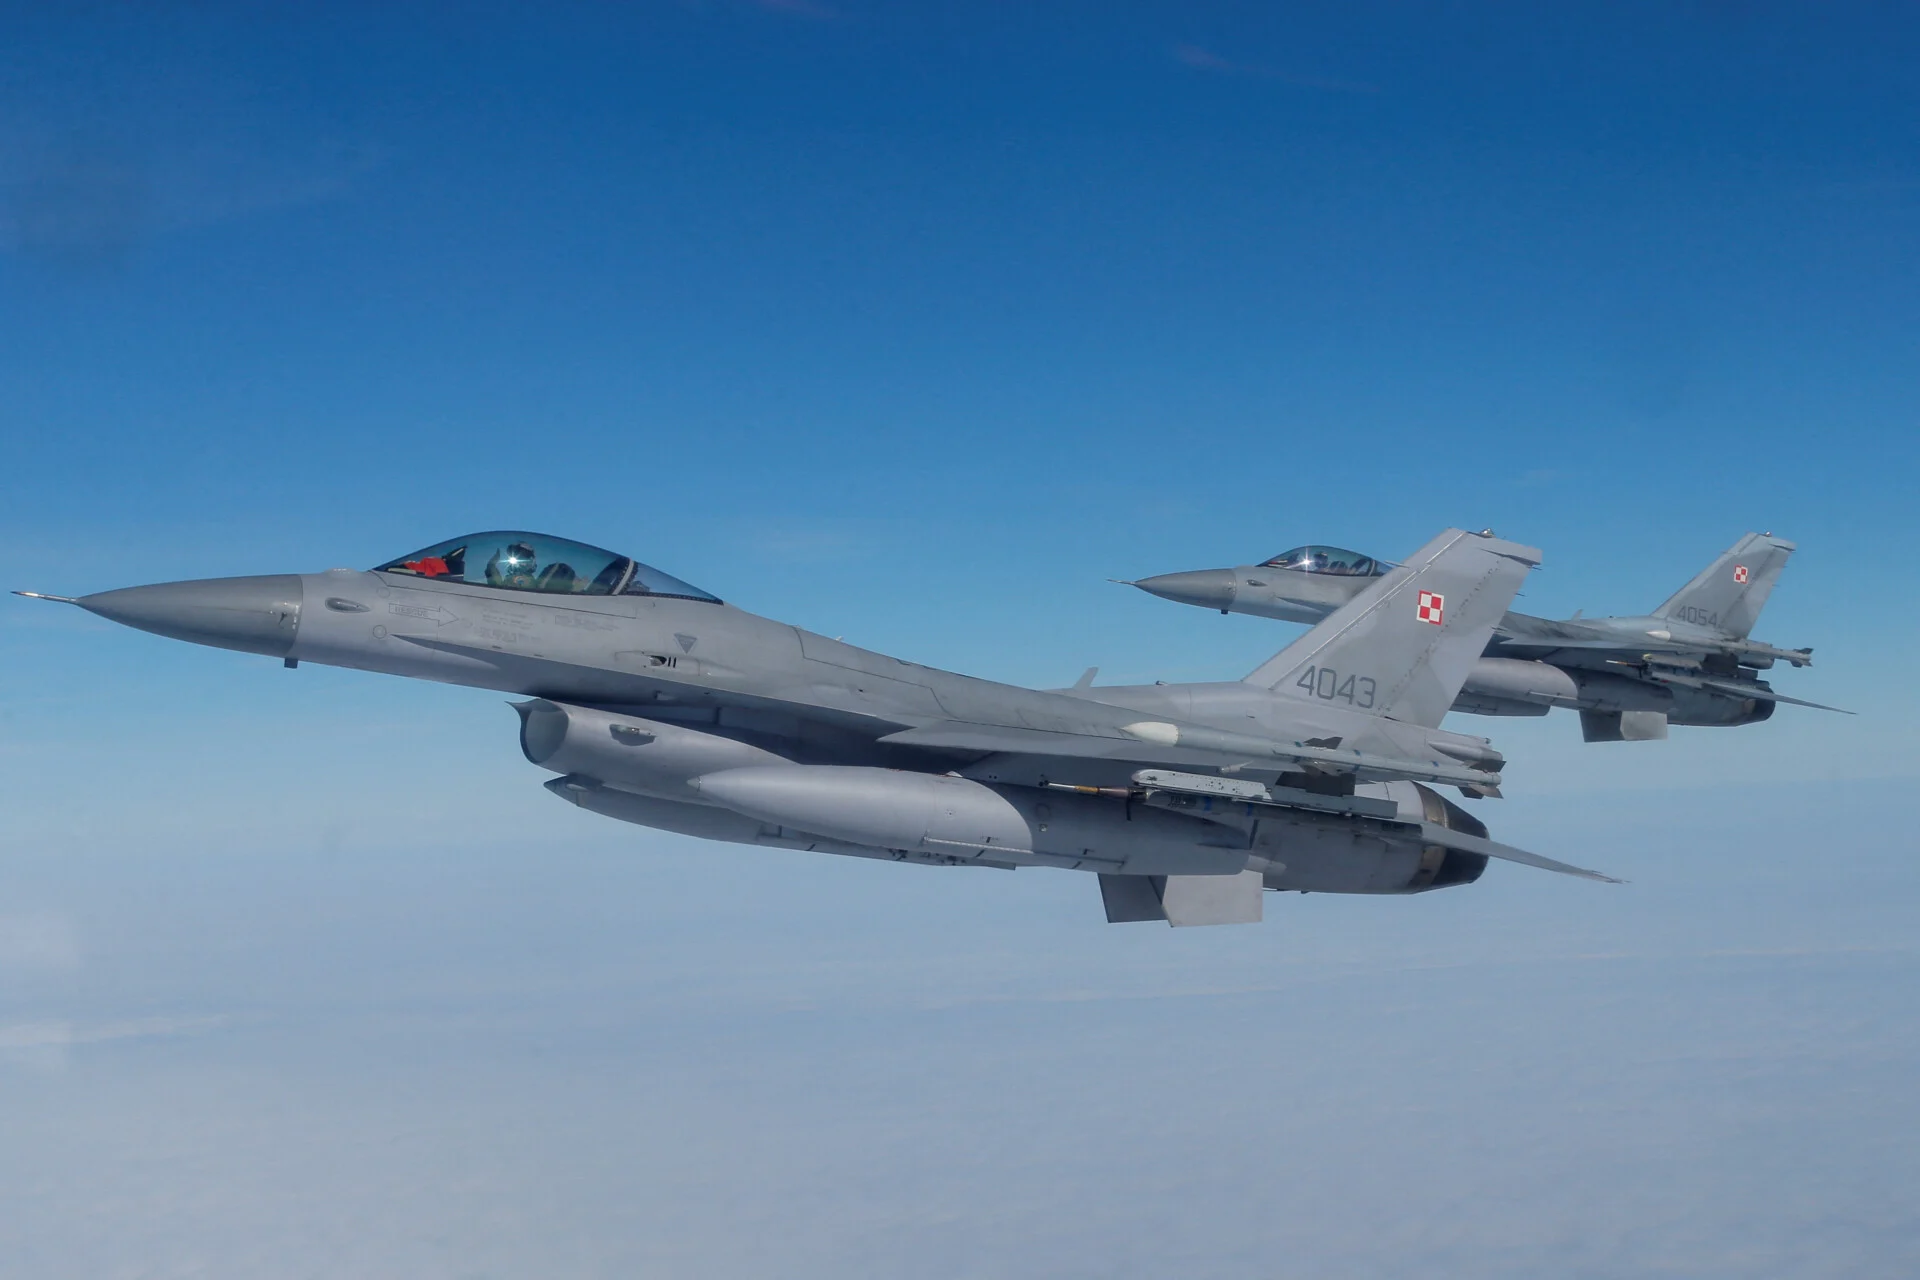 Γκρέγκορι Μικς: Τα βήματα αποκλιμάκωσης της Τουρκίας στο Αιγαίο οδήγησαν στην απόφασή μου για τα F-16